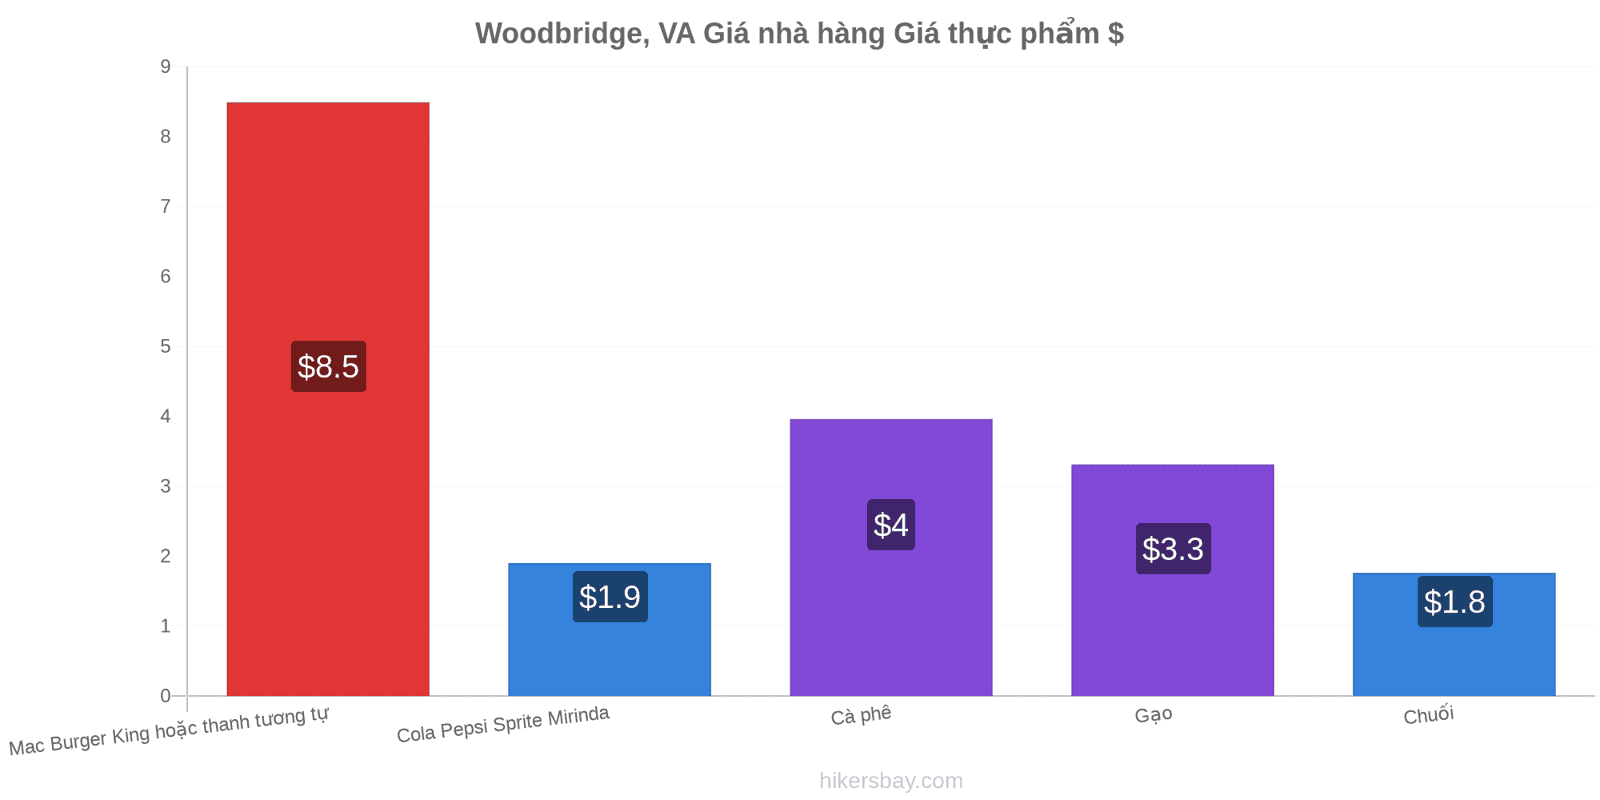 Woodbridge, VA thay đổi giá cả hikersbay.com